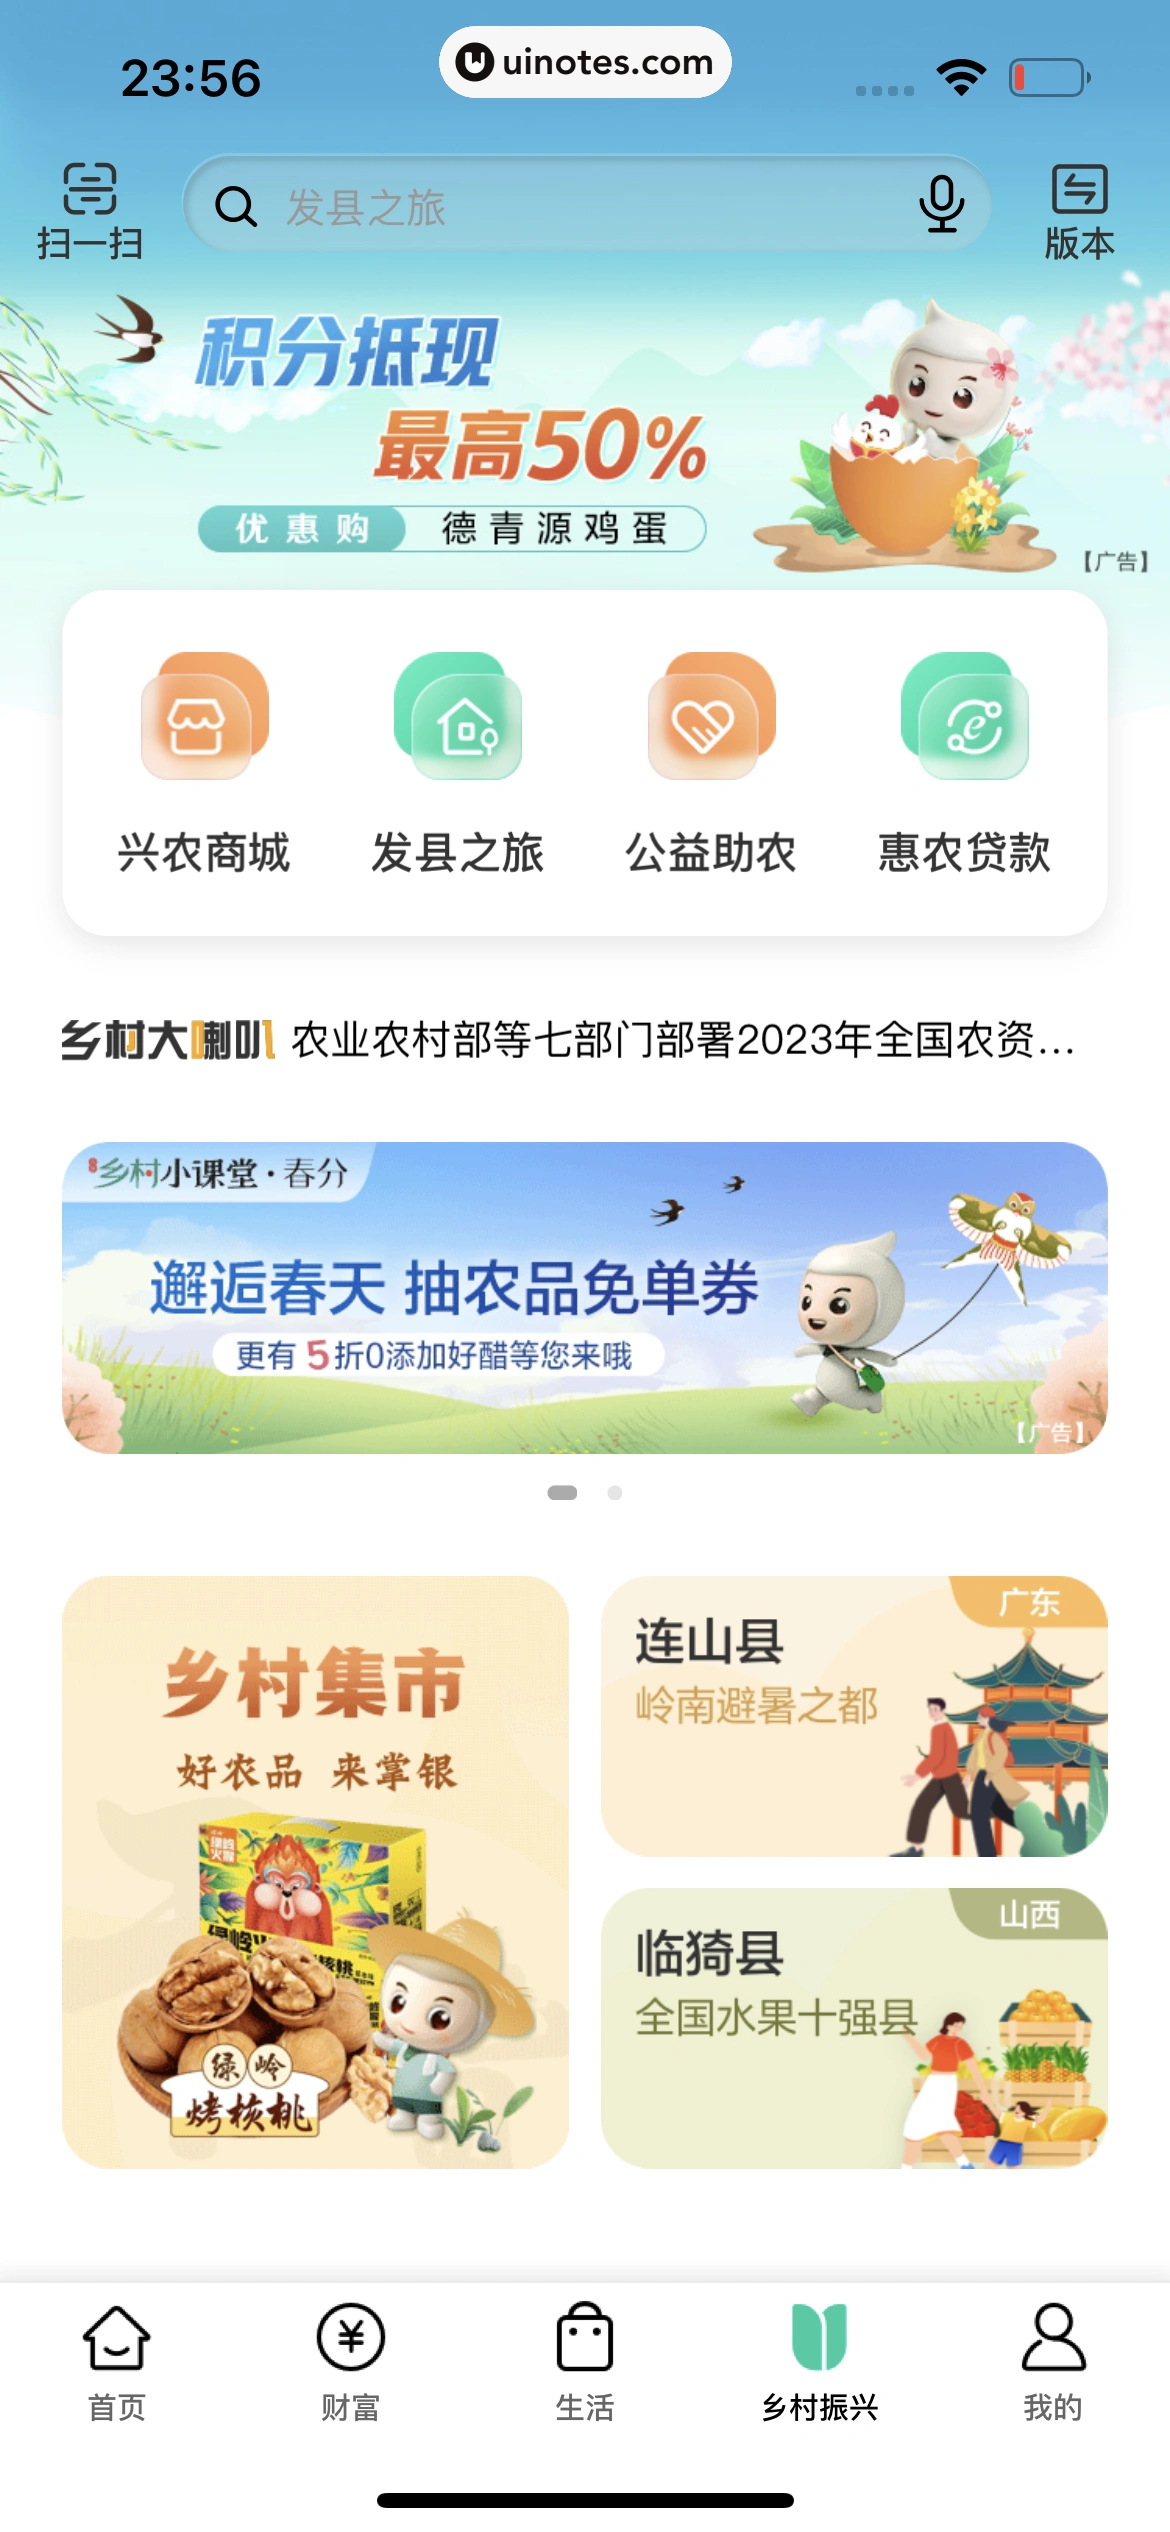 中国农业银行 App 截图 232 - UI Notes